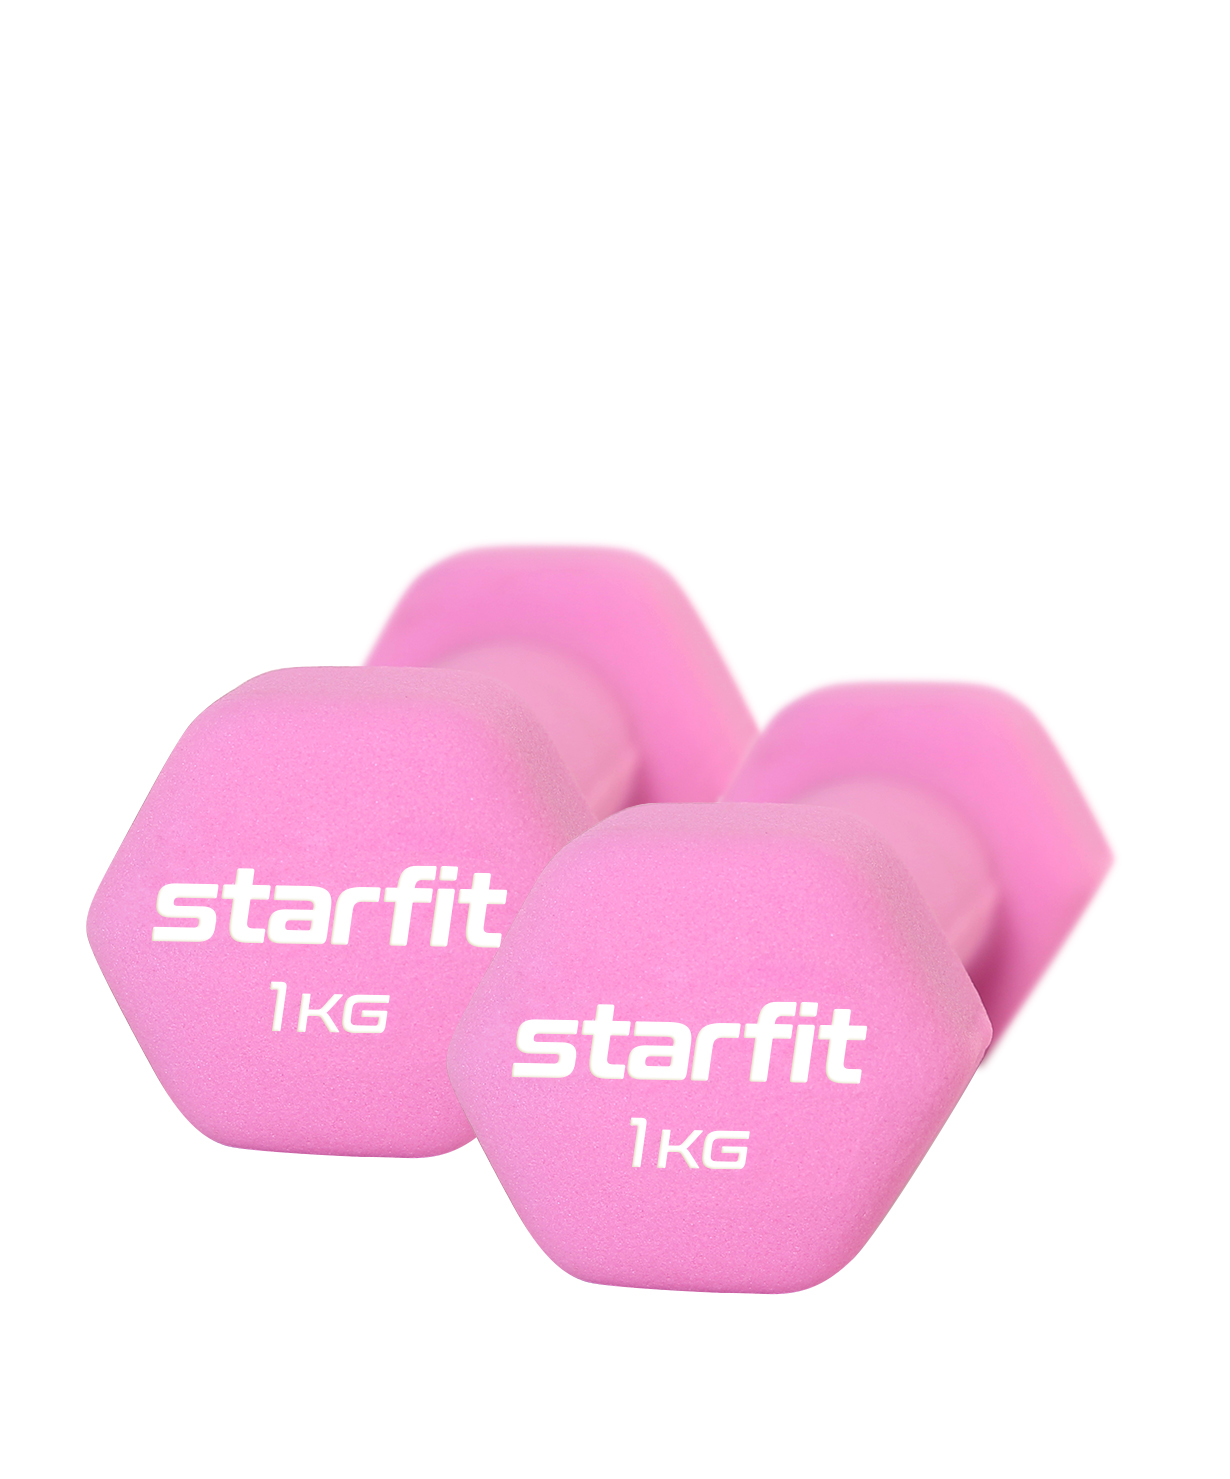 Неразборные гантели неопреновые StarFit DB-201 2 x 1 кг, розовый